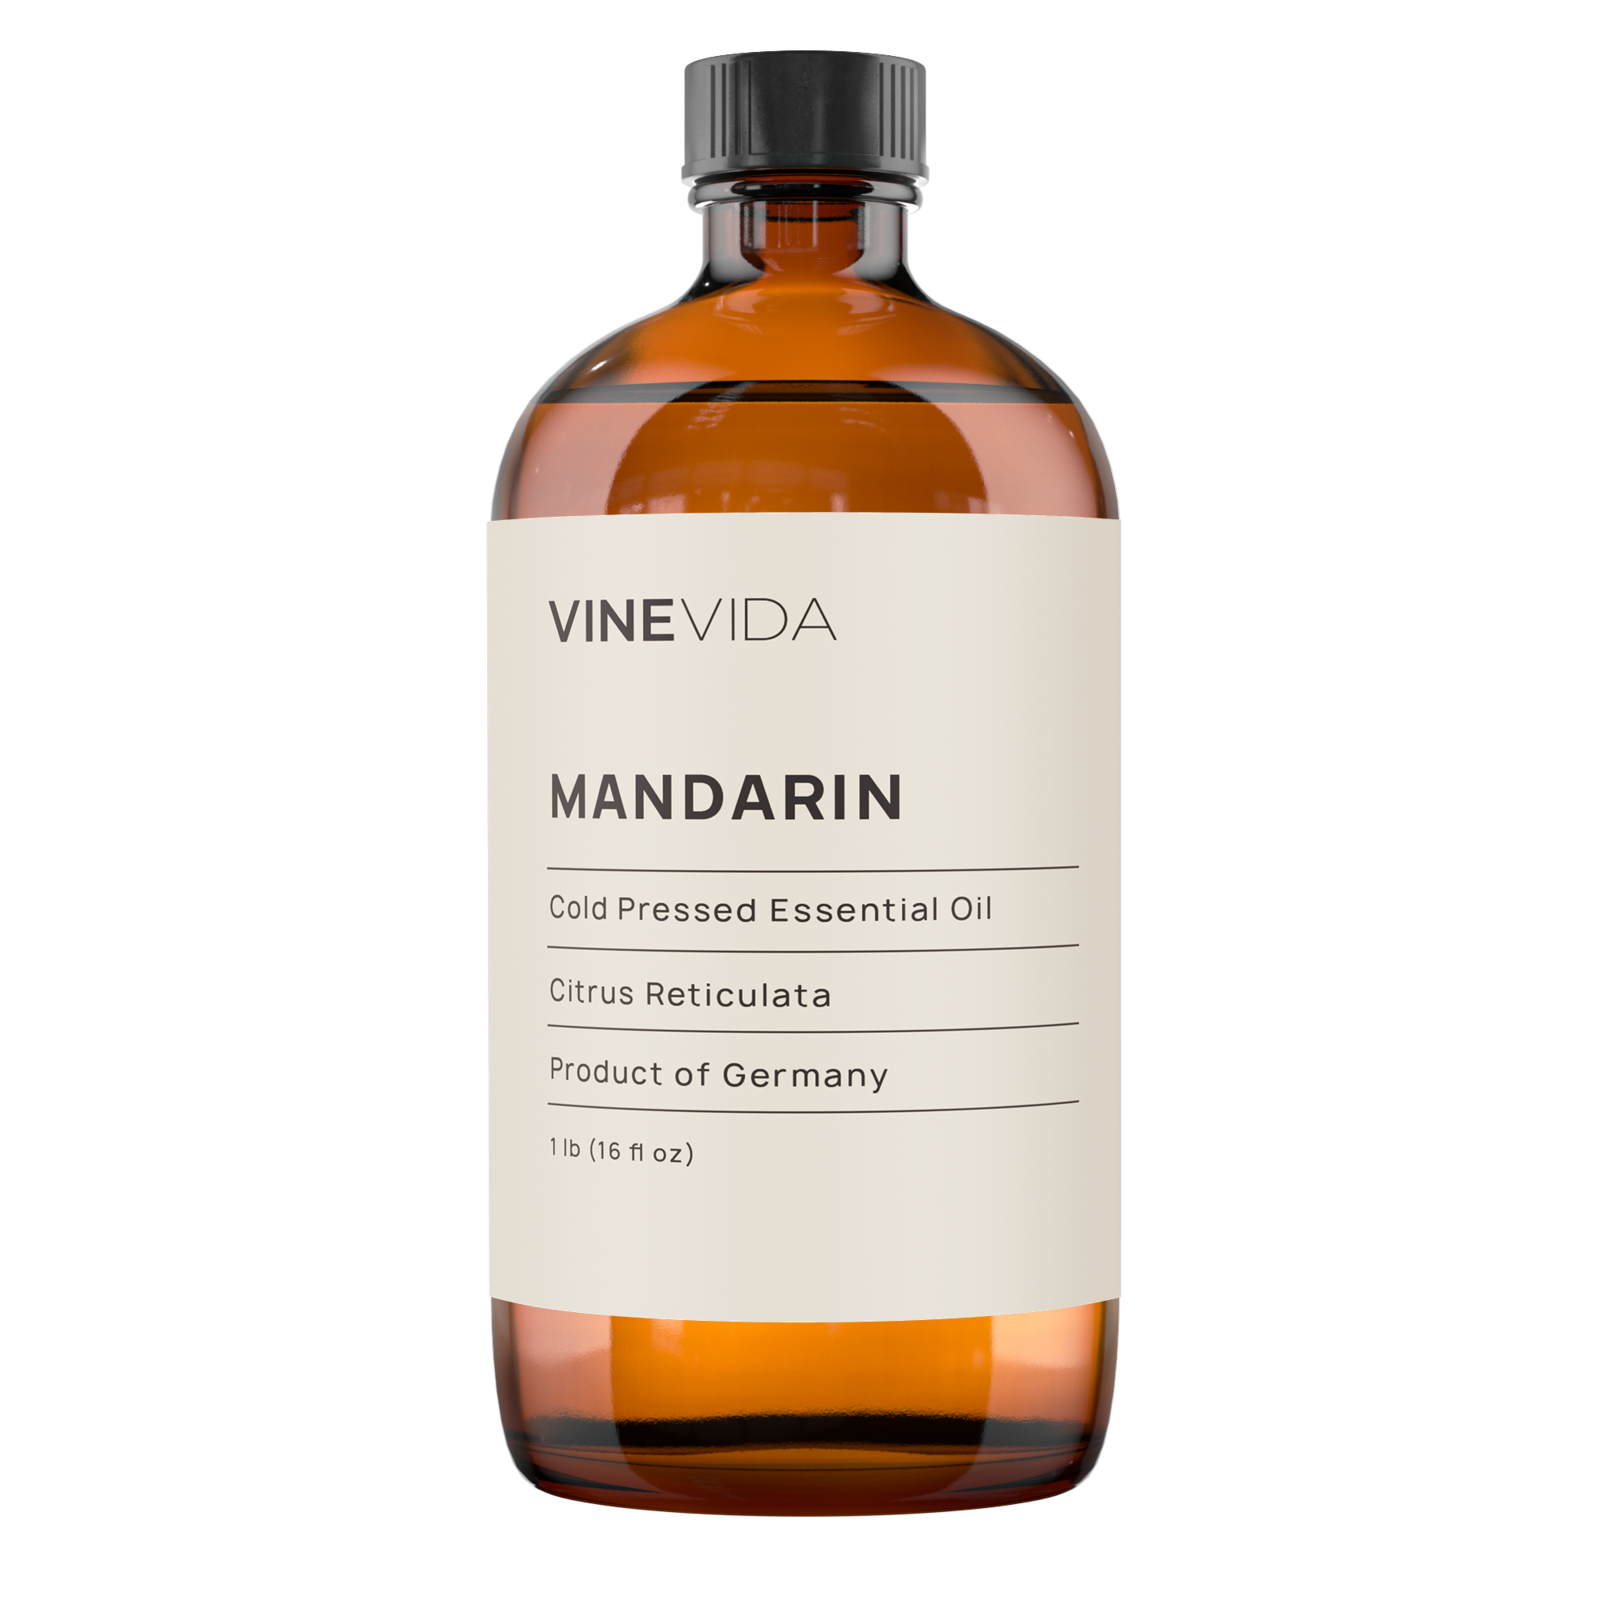 Mandarin Essential Oil